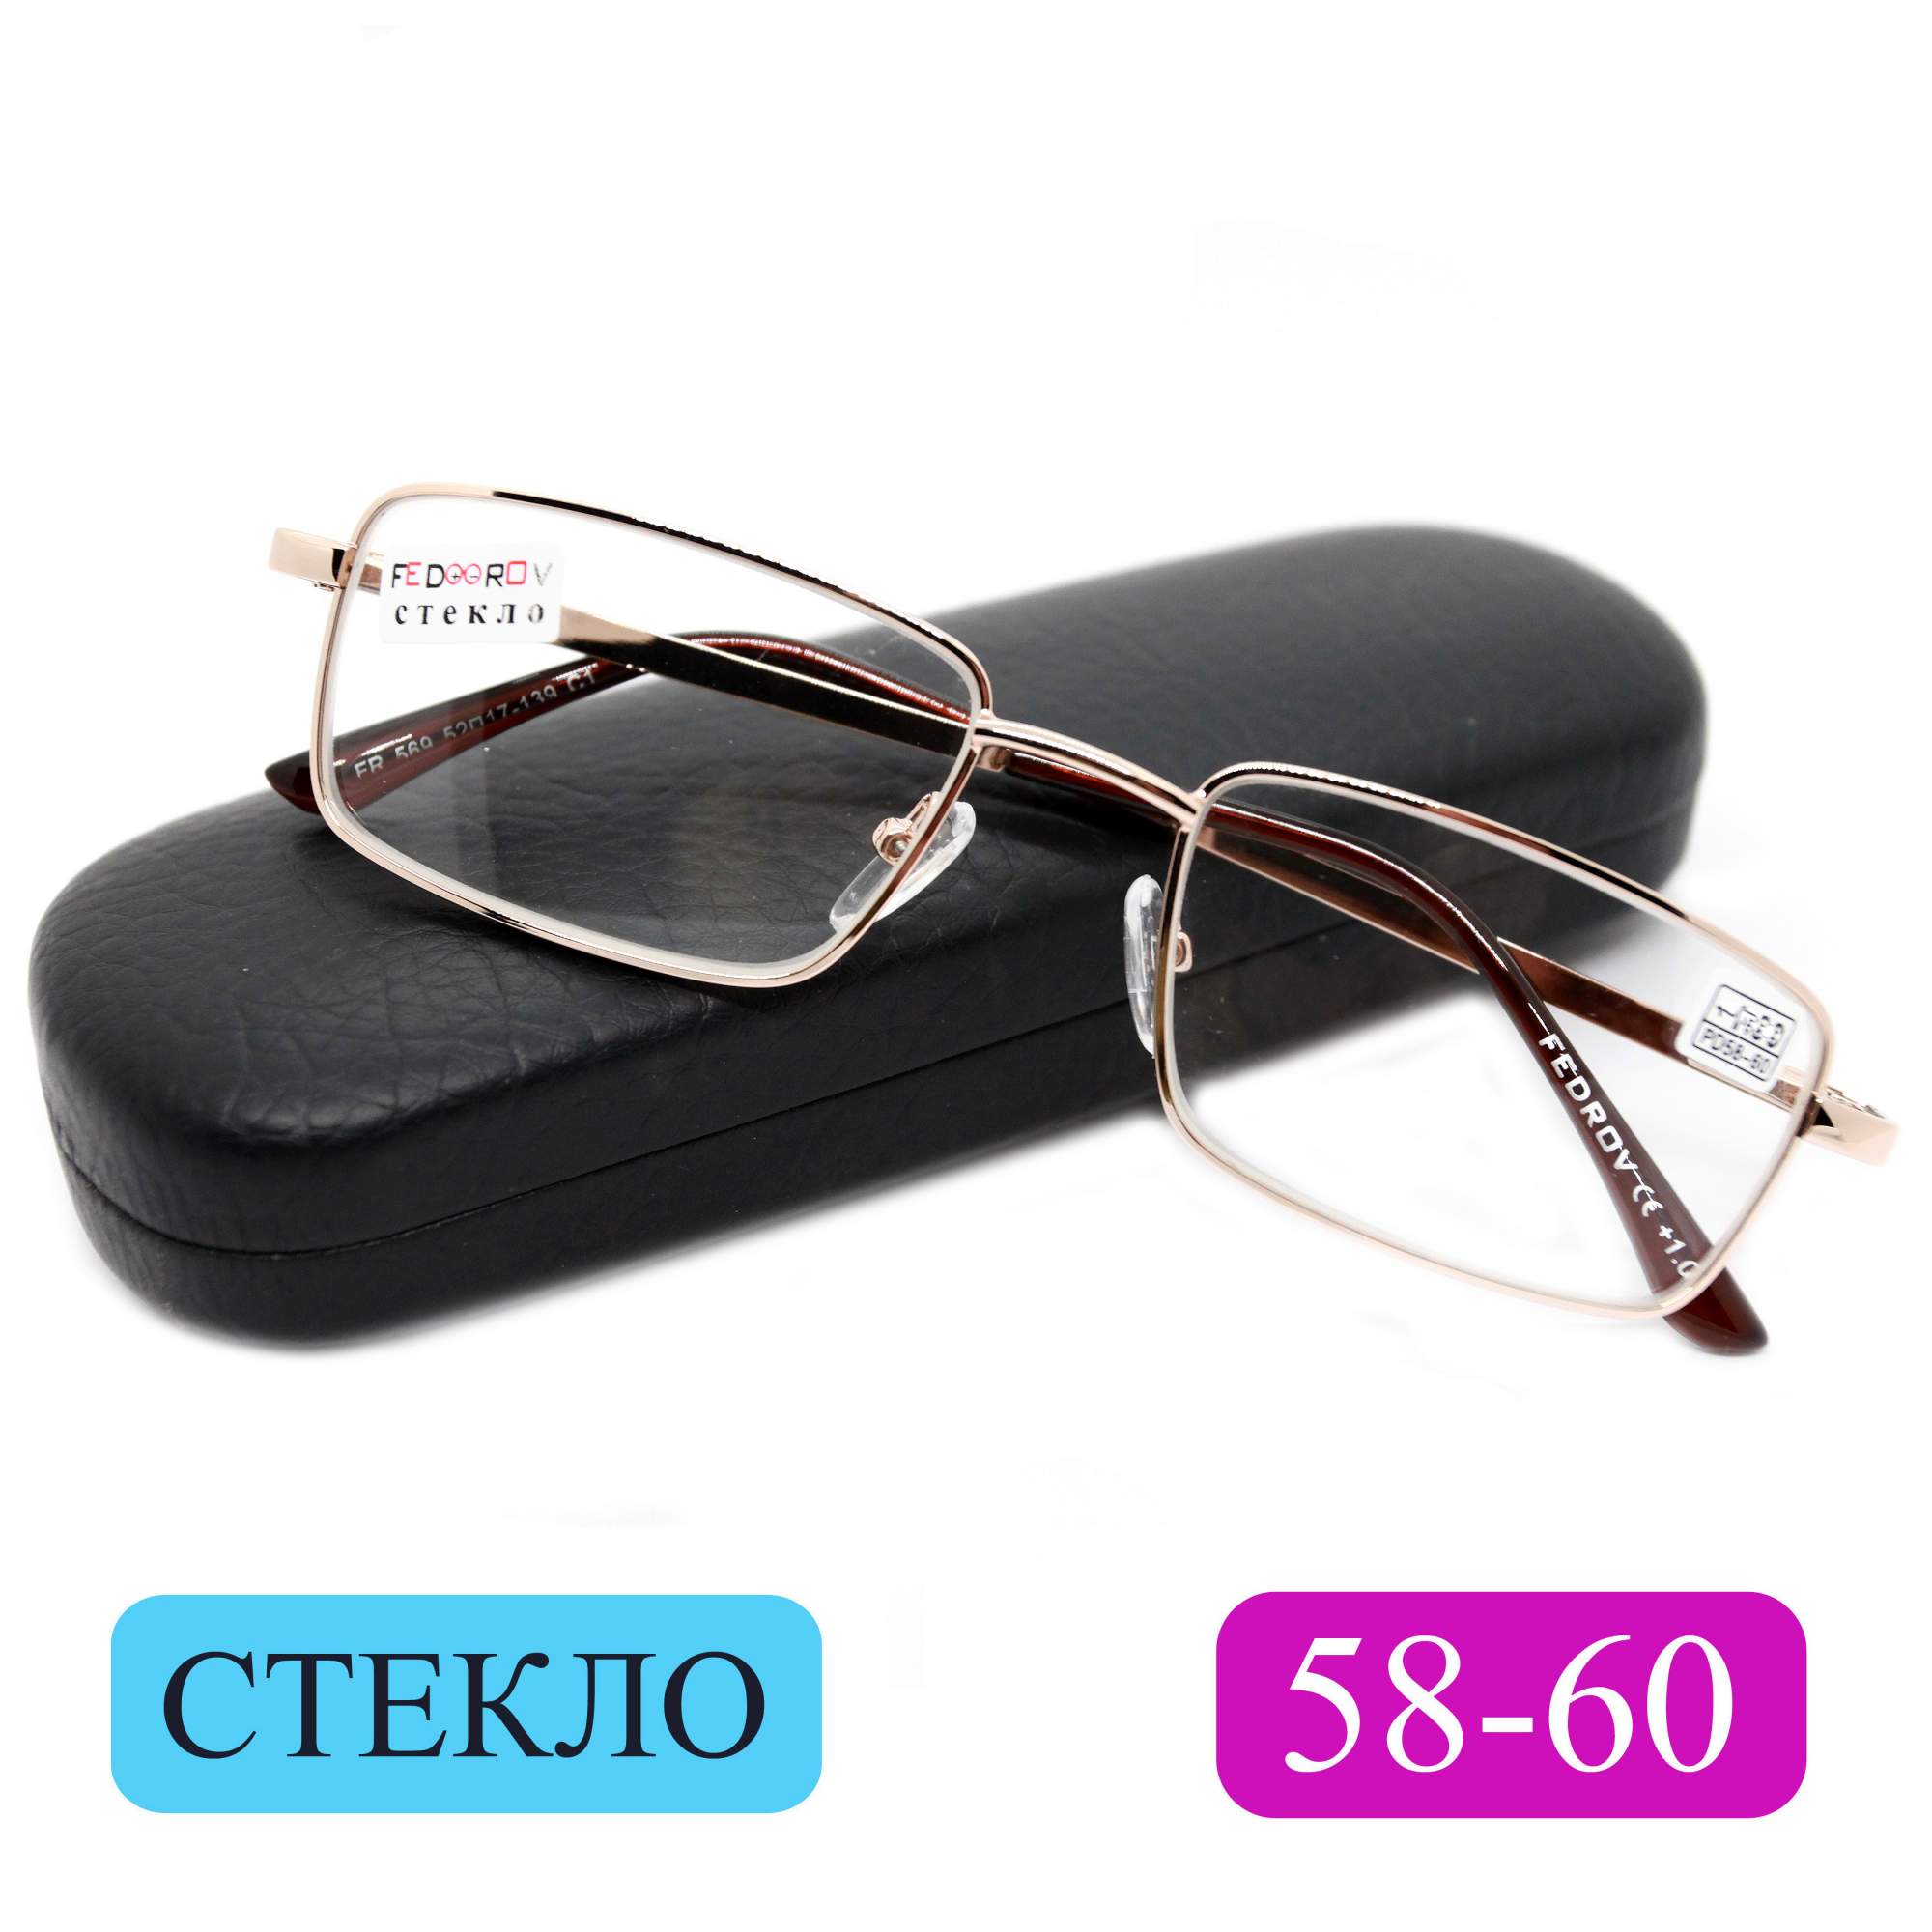 Готовые очки Fedrov 569, со стеклянной линзой, +3,75, c футляром, золотые, РЦ 58-60